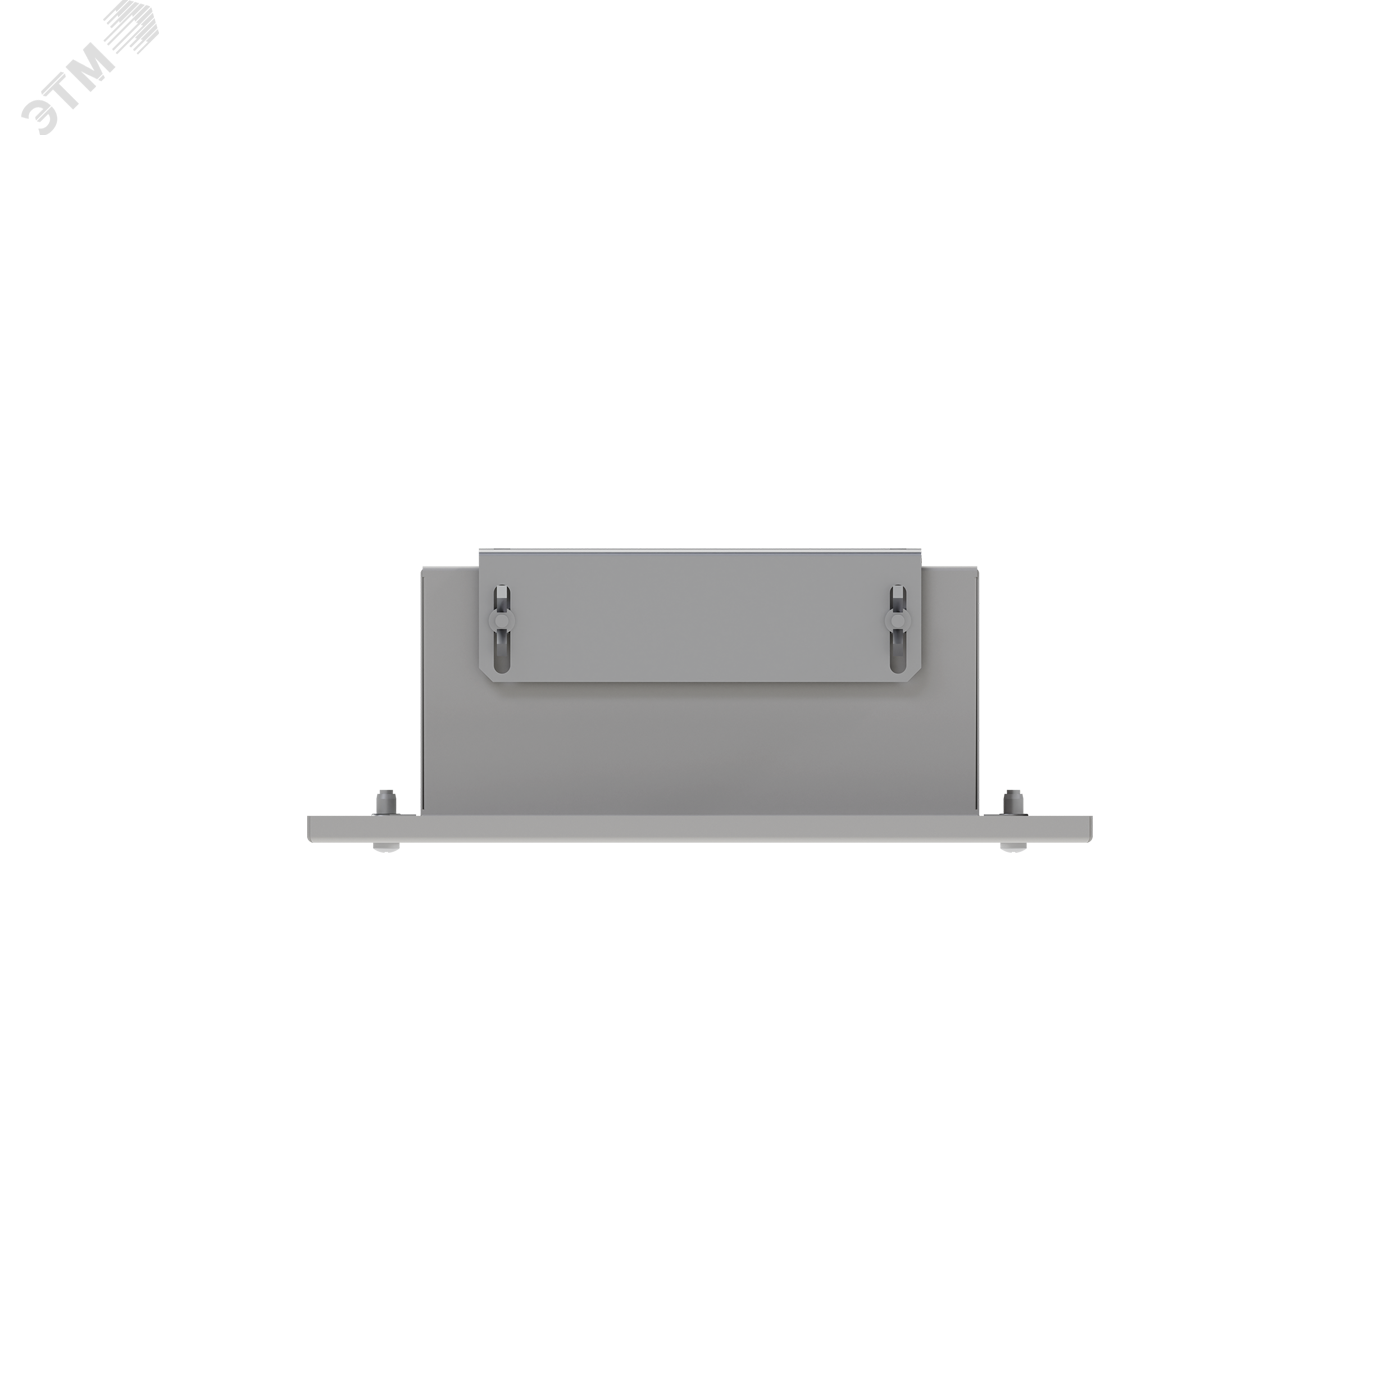 Светильник ALD 2x14 реечный опаловый IP54 ЭПРА 1004000050 Световые Технологии - превью 5